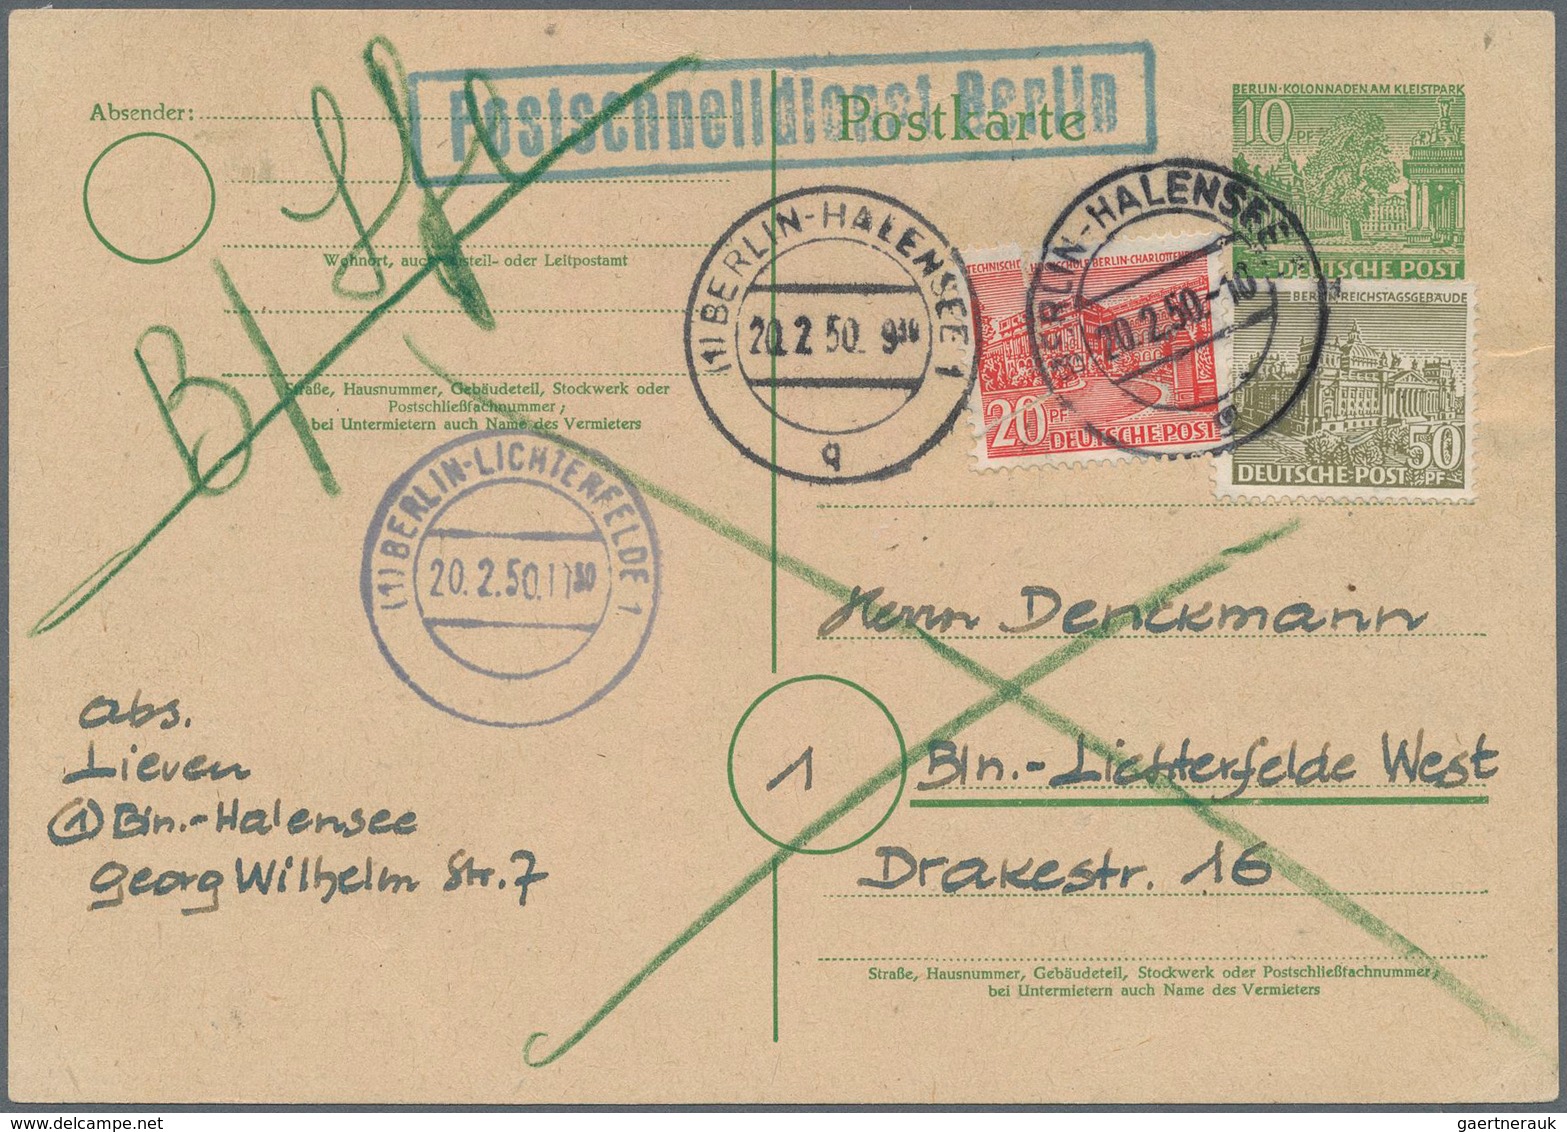 Berlin - Postschnelldienst: 10 Pf. Bauten GA-Karte Mit Zusatzfrankatur 20 U. 50 Pf. Bauten Als Posts - Covers & Documents